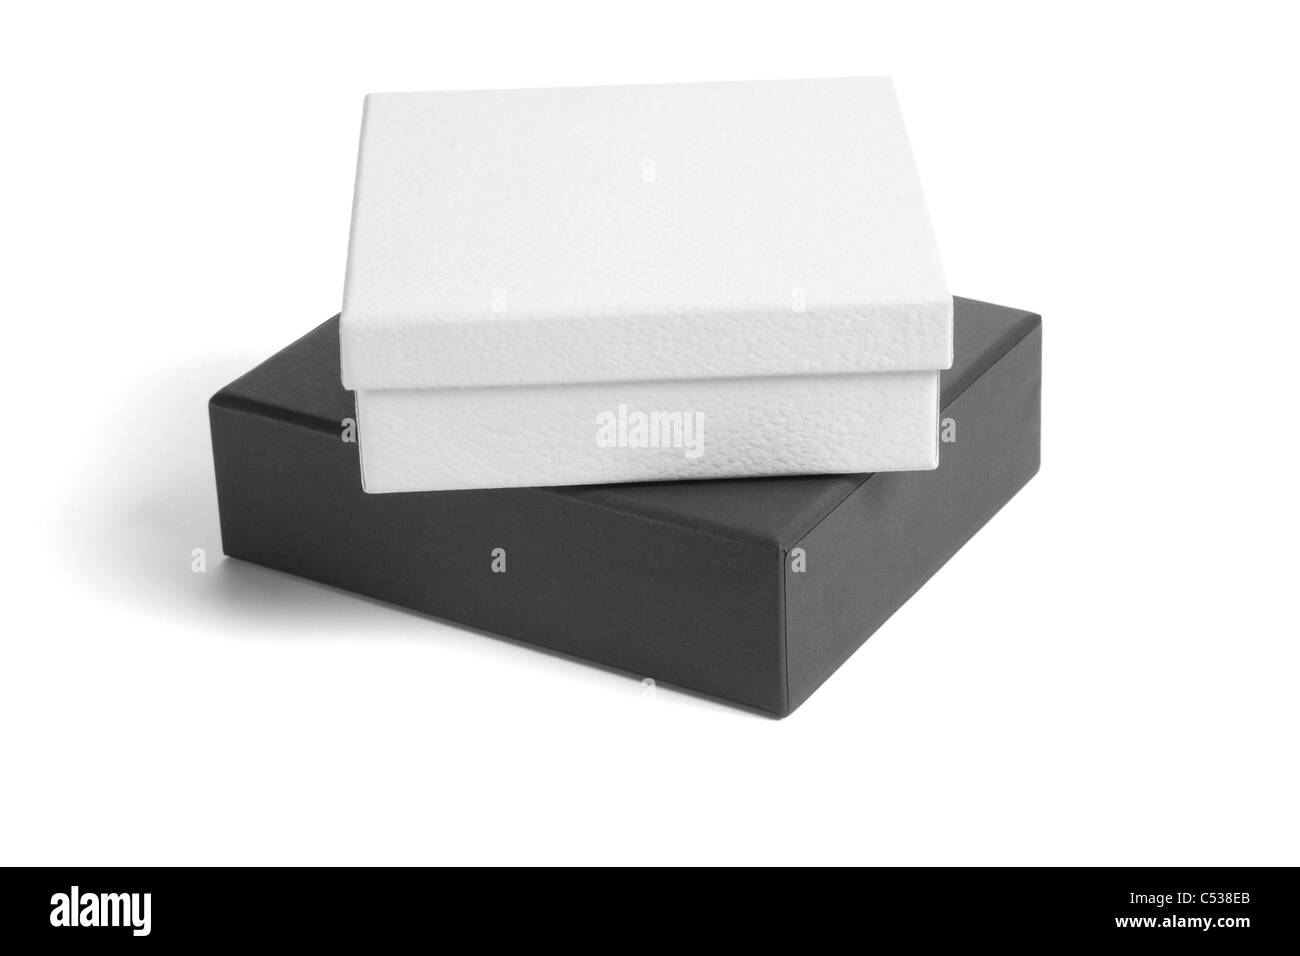 Schwarz / weiß-Geschenk-Boxen auf isolierte Hintergrund Stockfoto